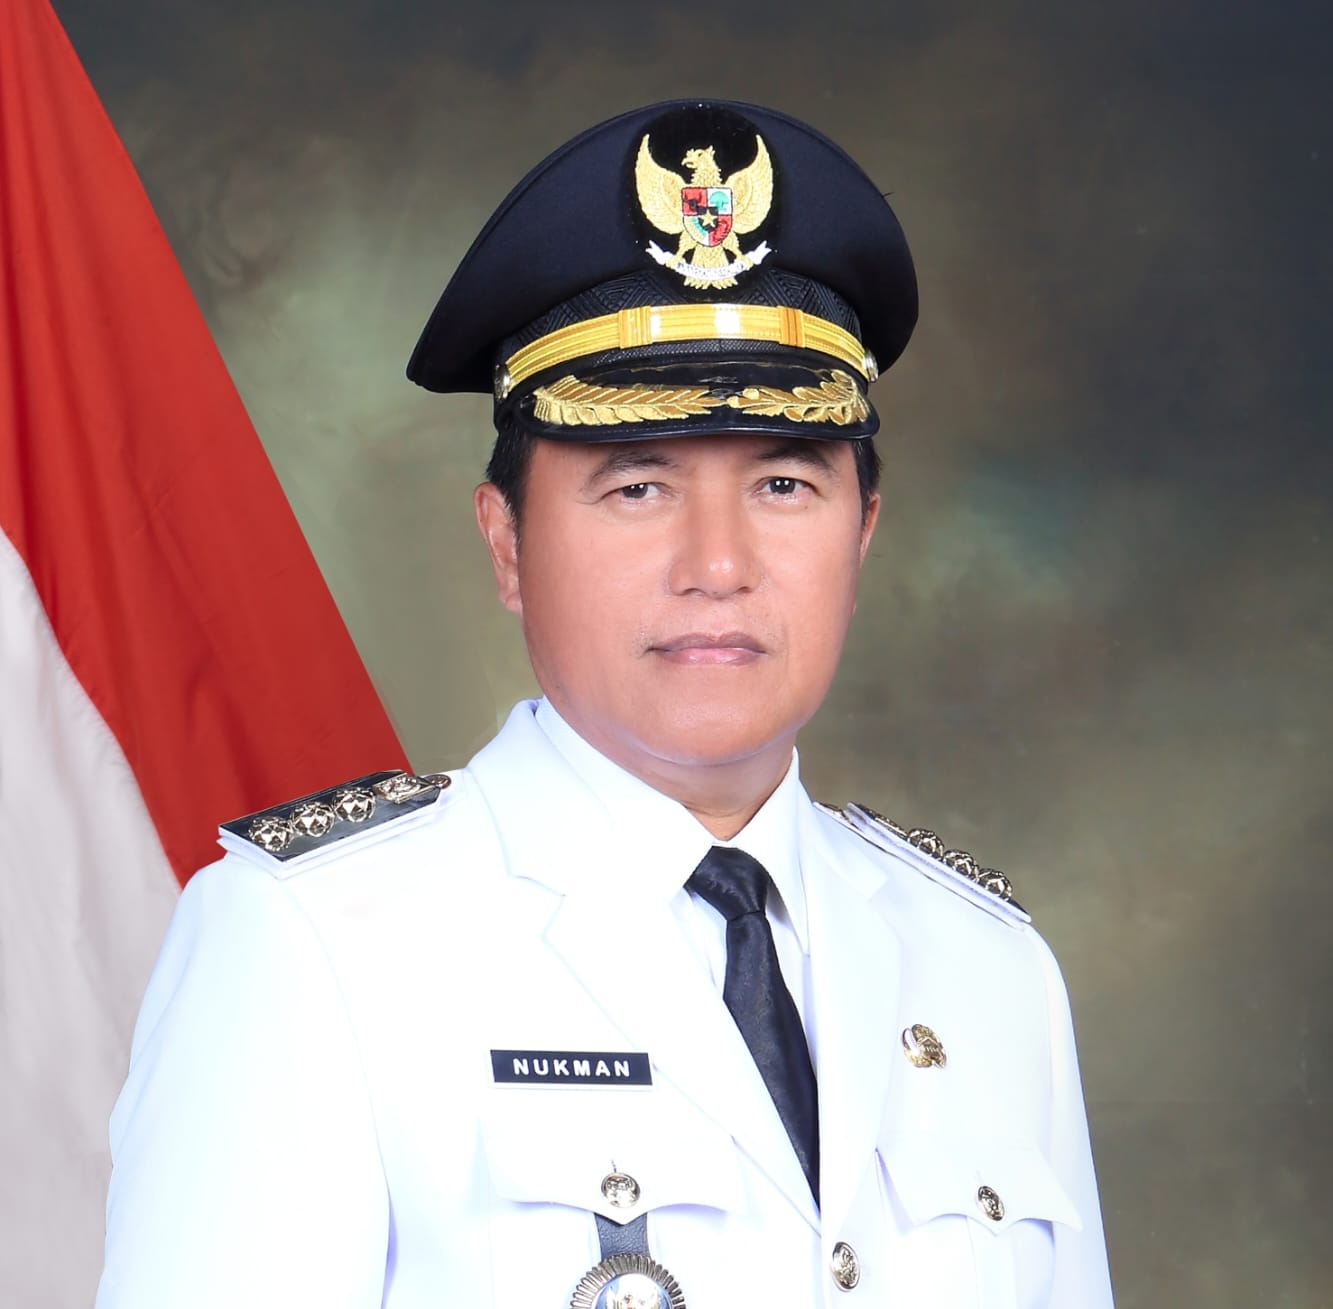 Pj Bupati Nukman Direncanakan Lantik Ratusan Pejabat di Lampung Barat